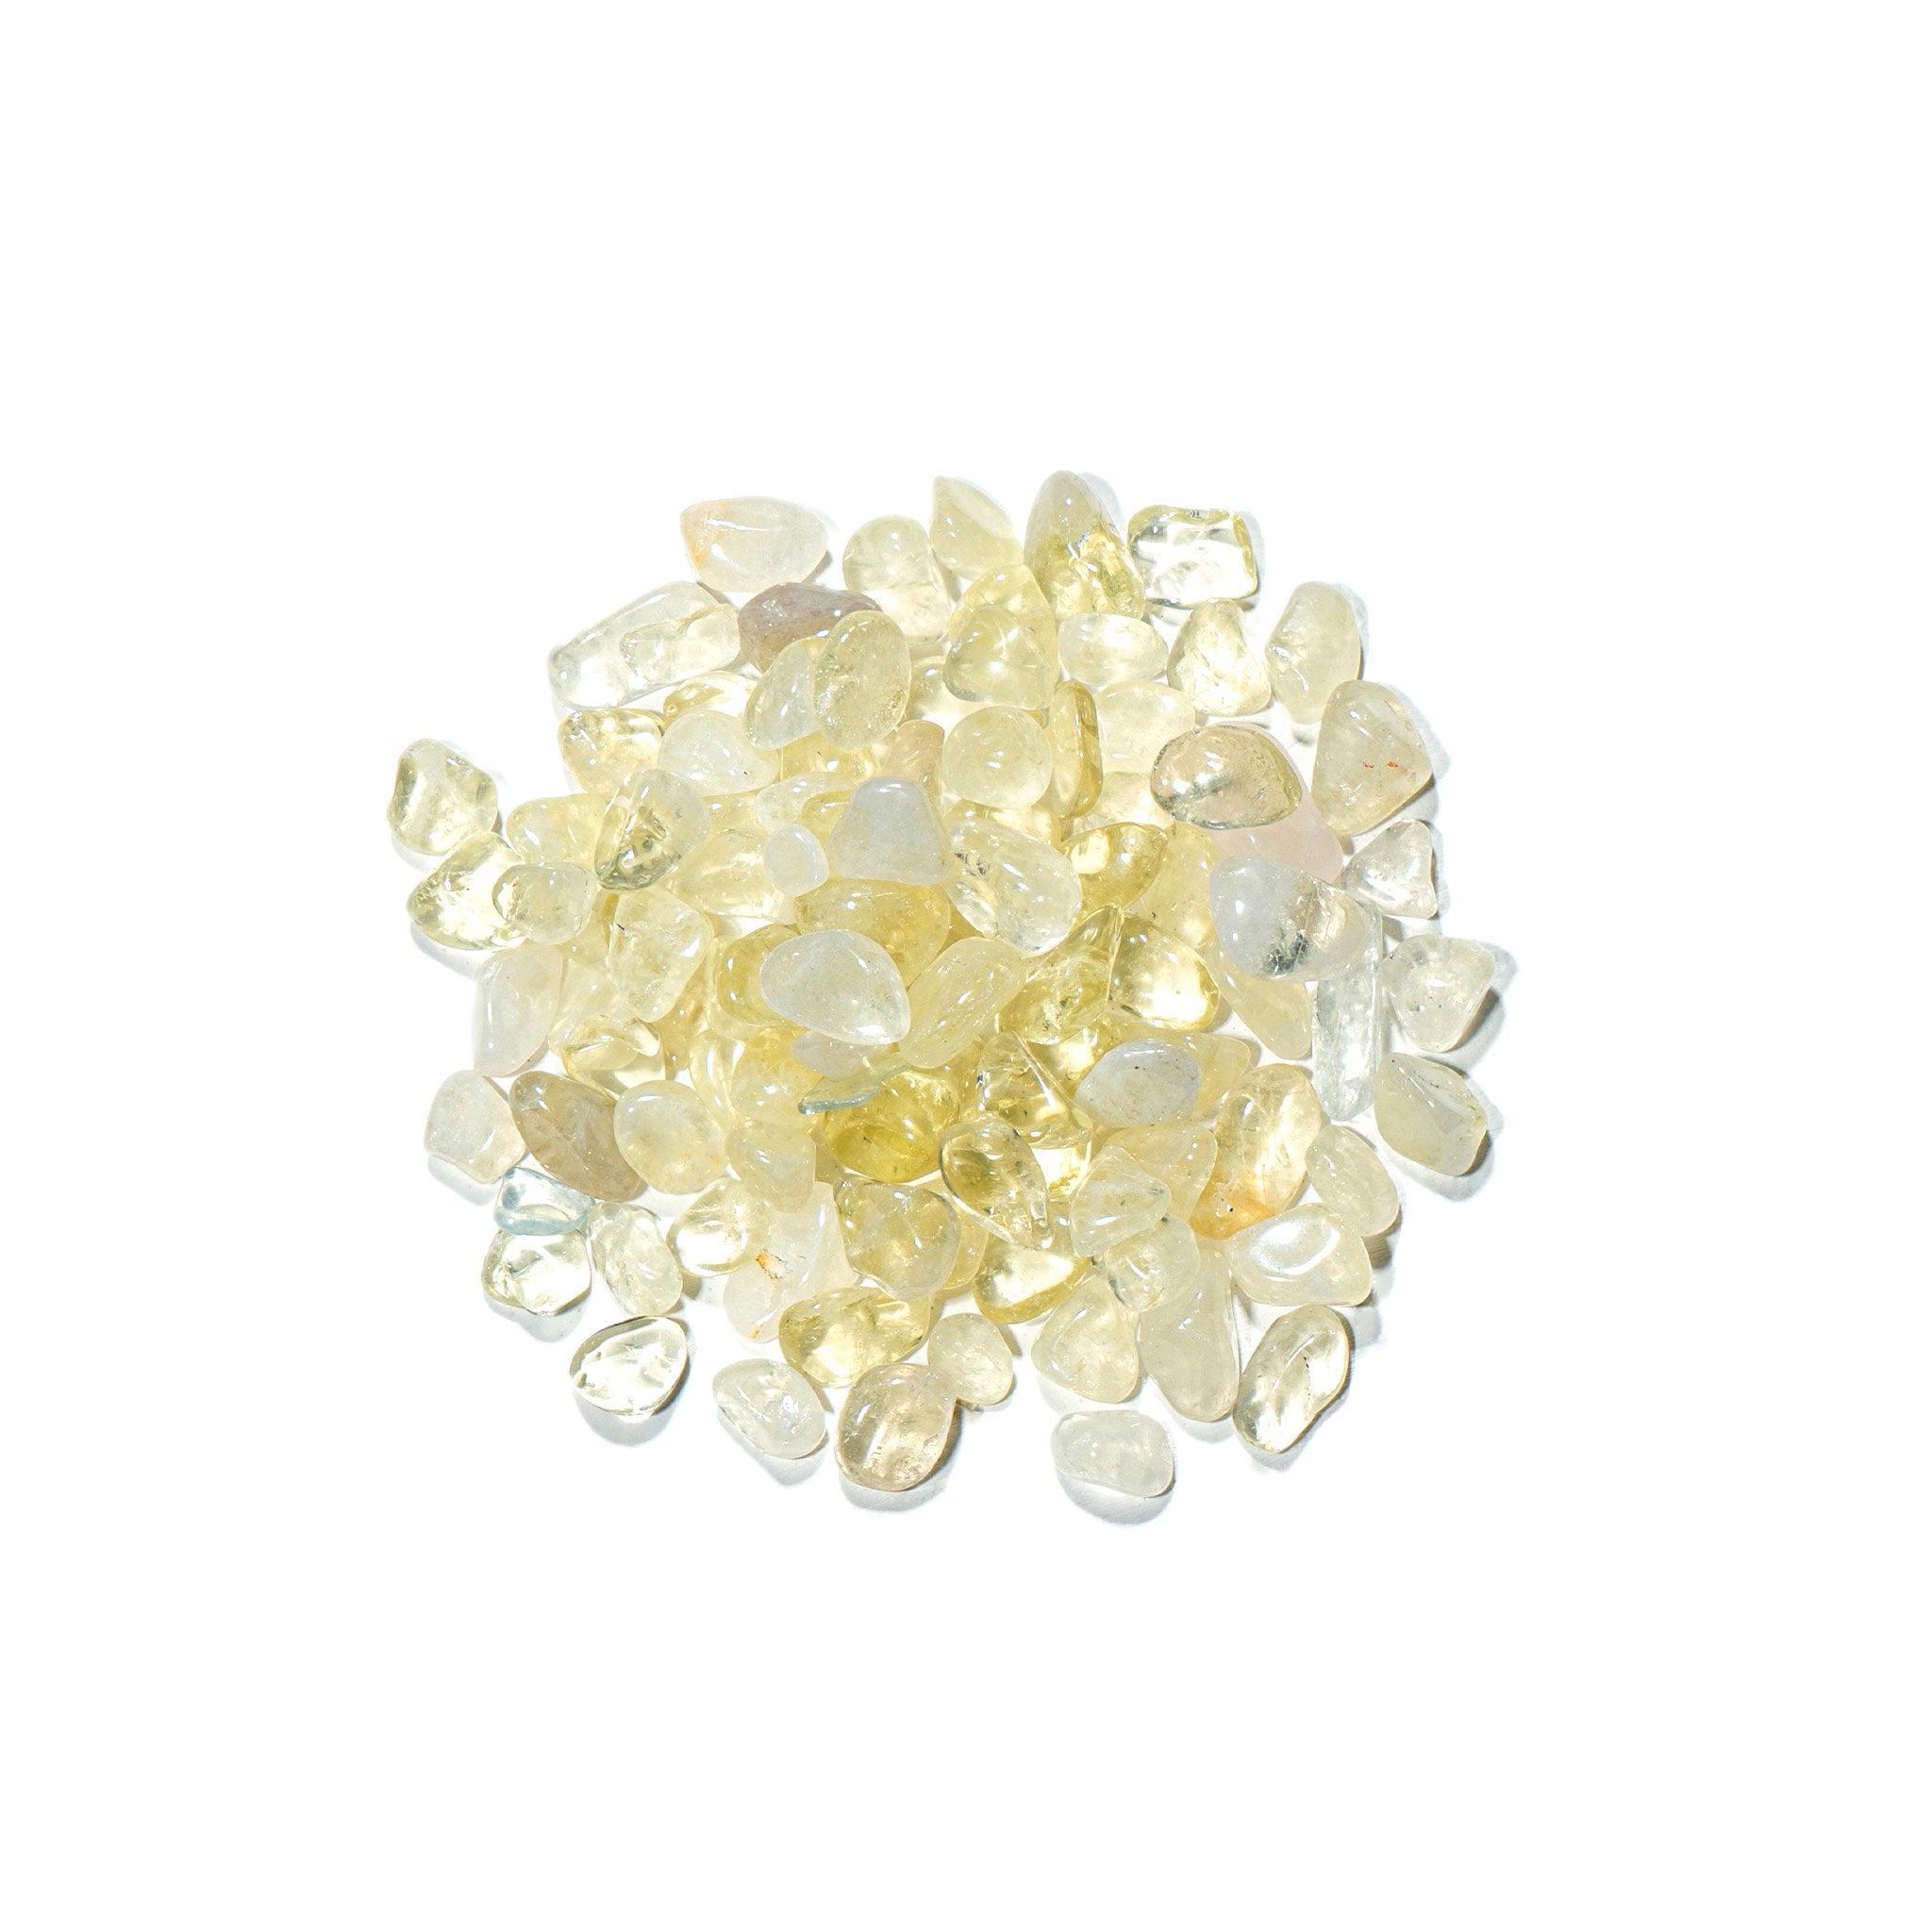 AWNL 瑞典珠寶 天然晶石 巴西 檸檬晶 淨化充能 消磁石